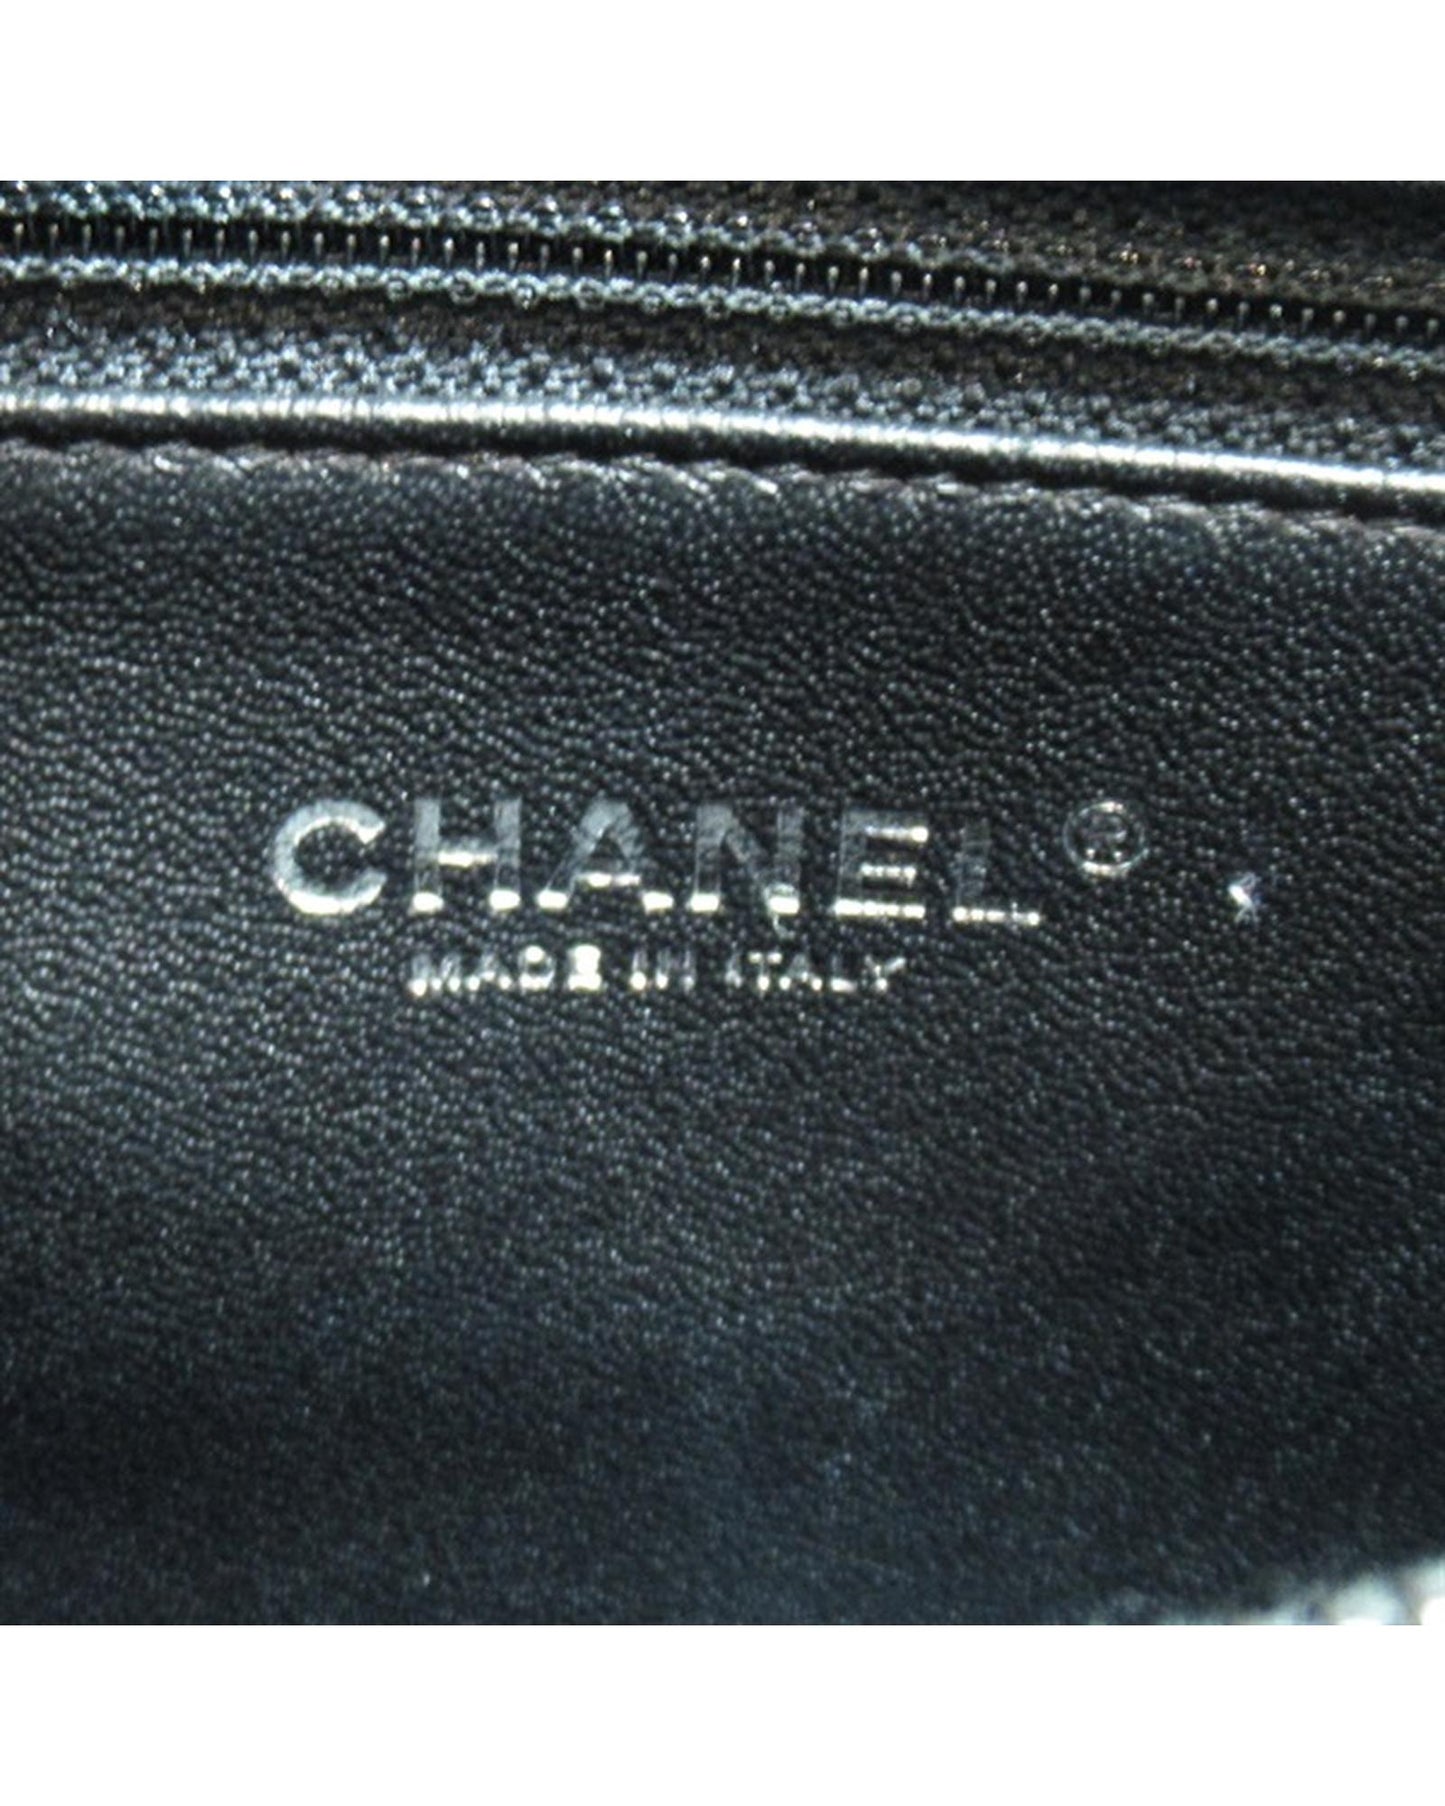 Chanel Women's Black Top Handle Handbag with CC Logo in Black